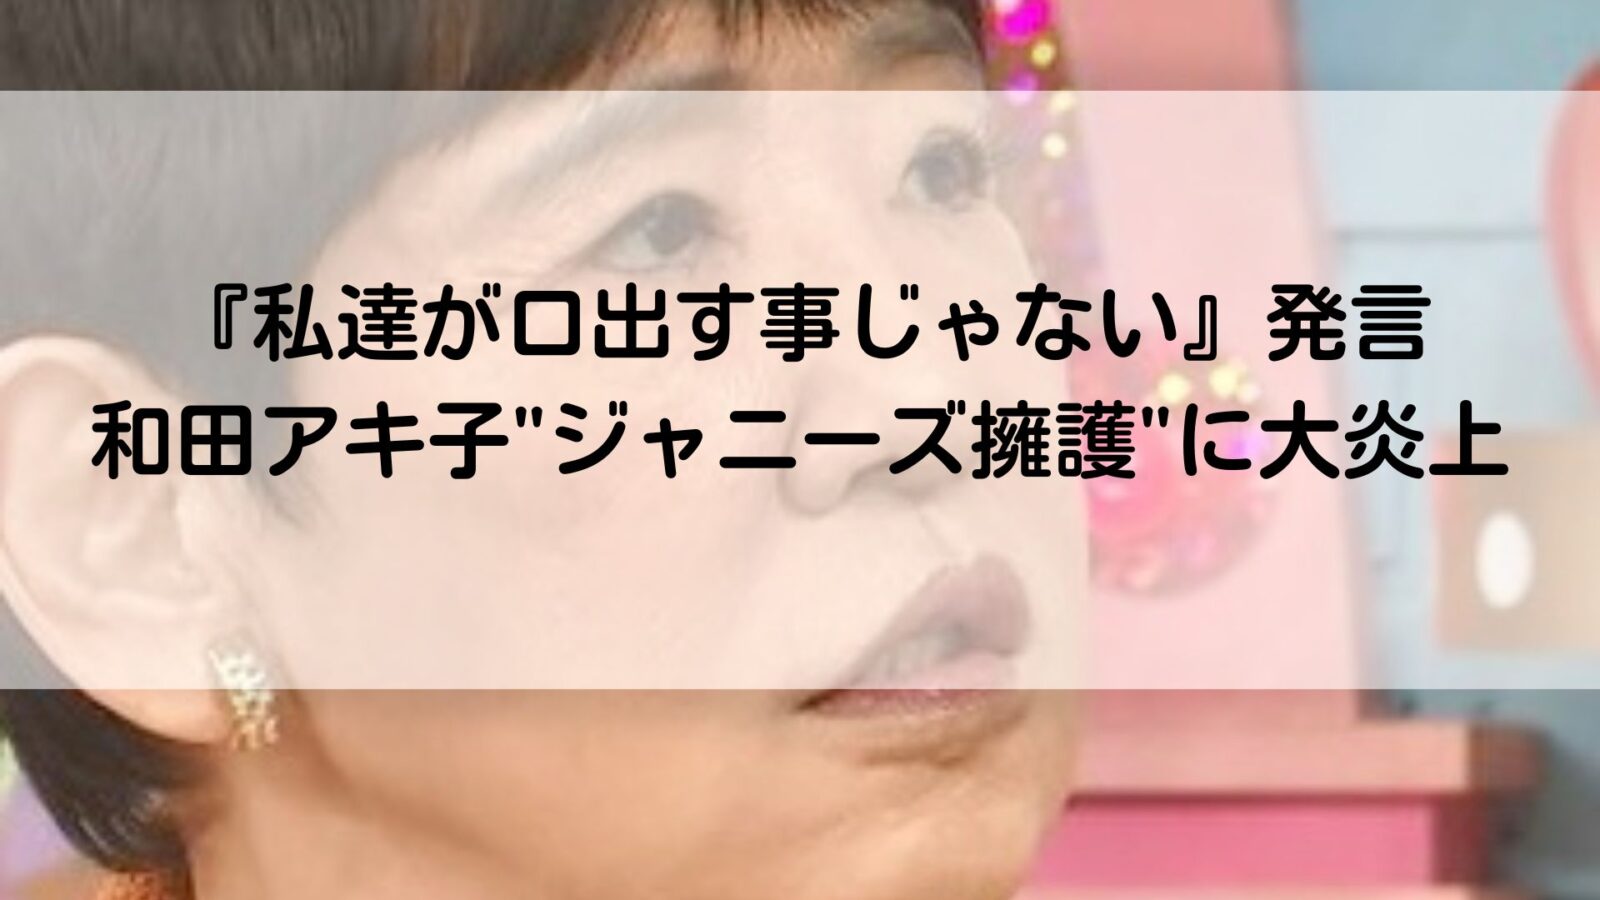 和田アキ子の記事のアイキャッチ画像